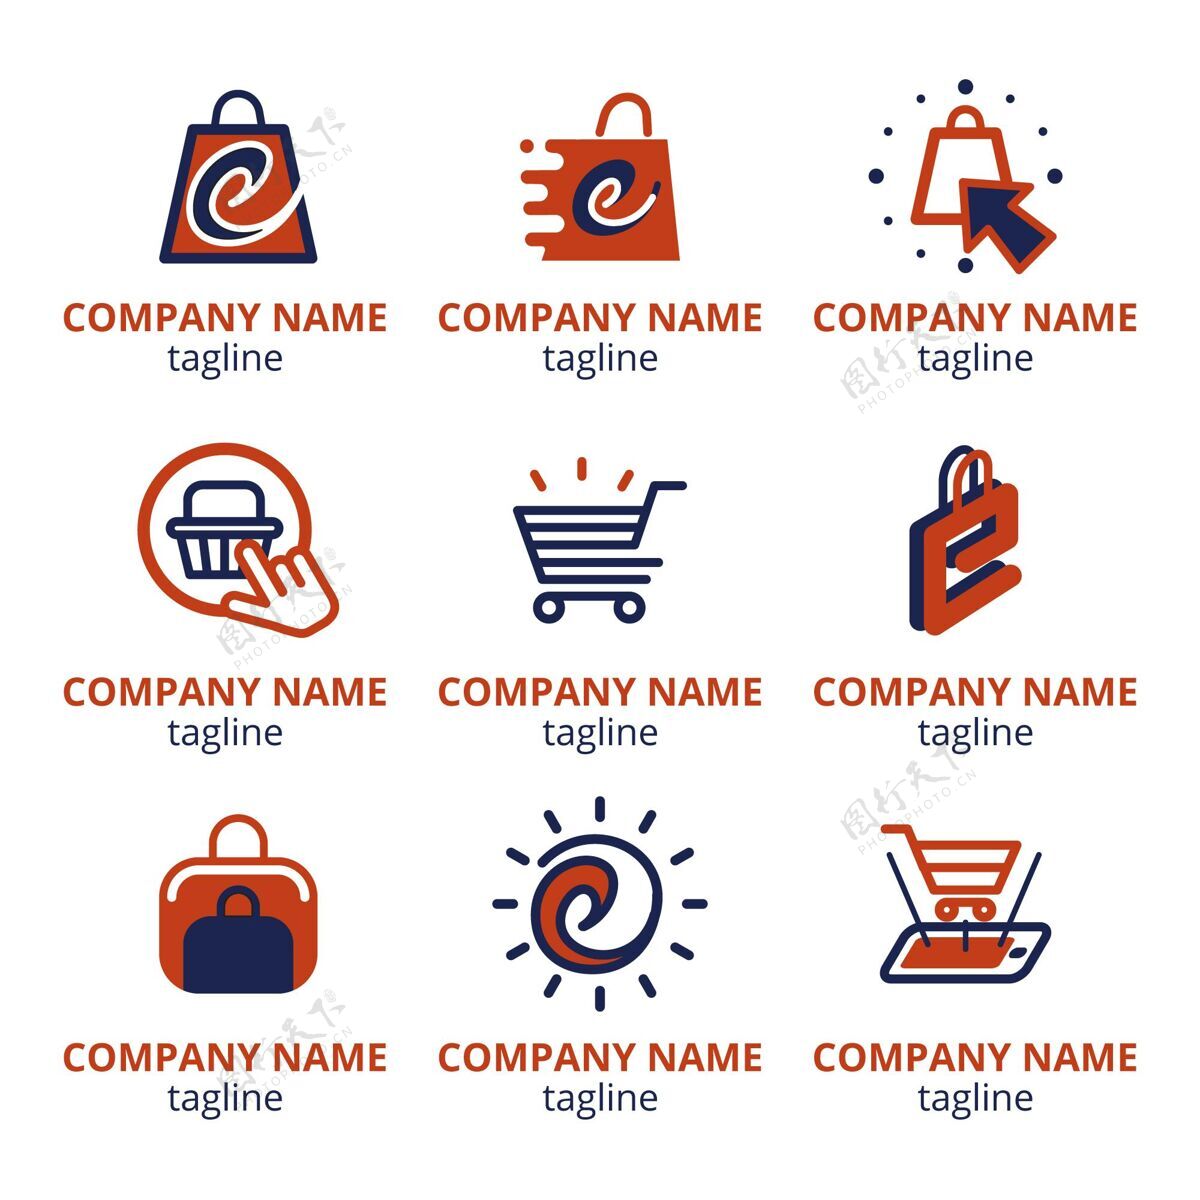 标识平面设计电子商务标志包企业企业标识网店标识